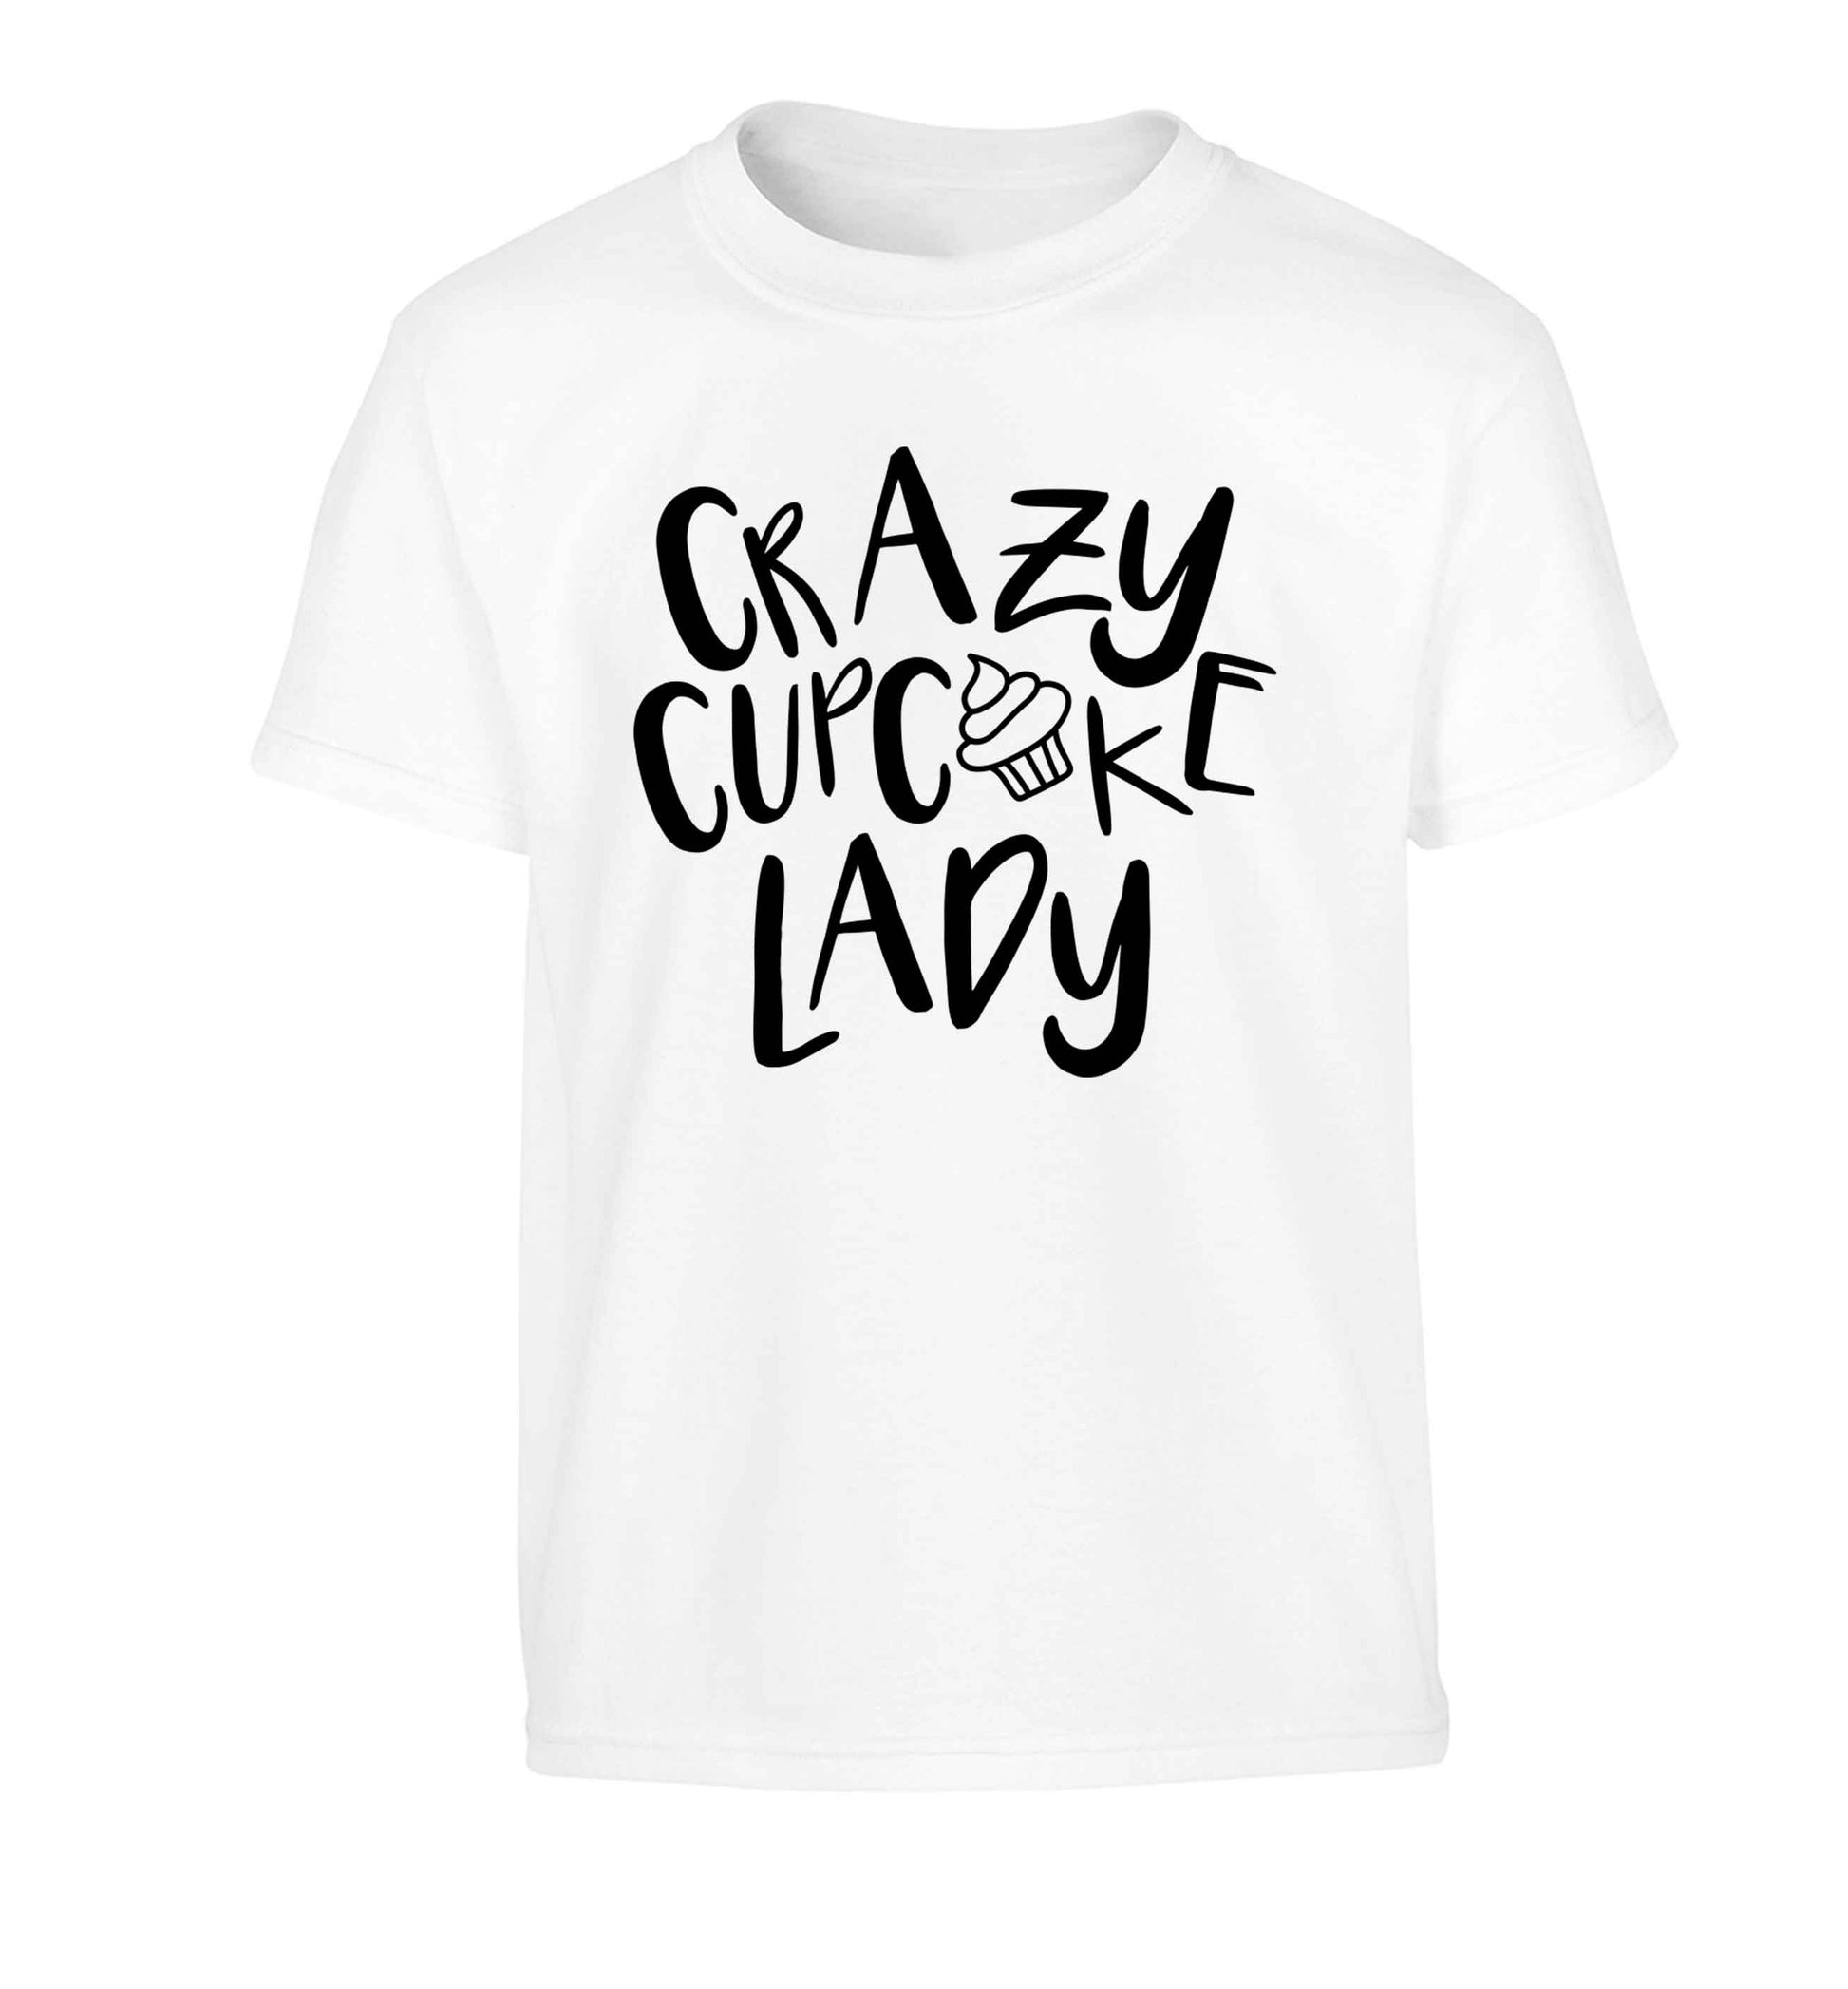 Crazy cupcake lady Children's white Tshirt 12-13 Years